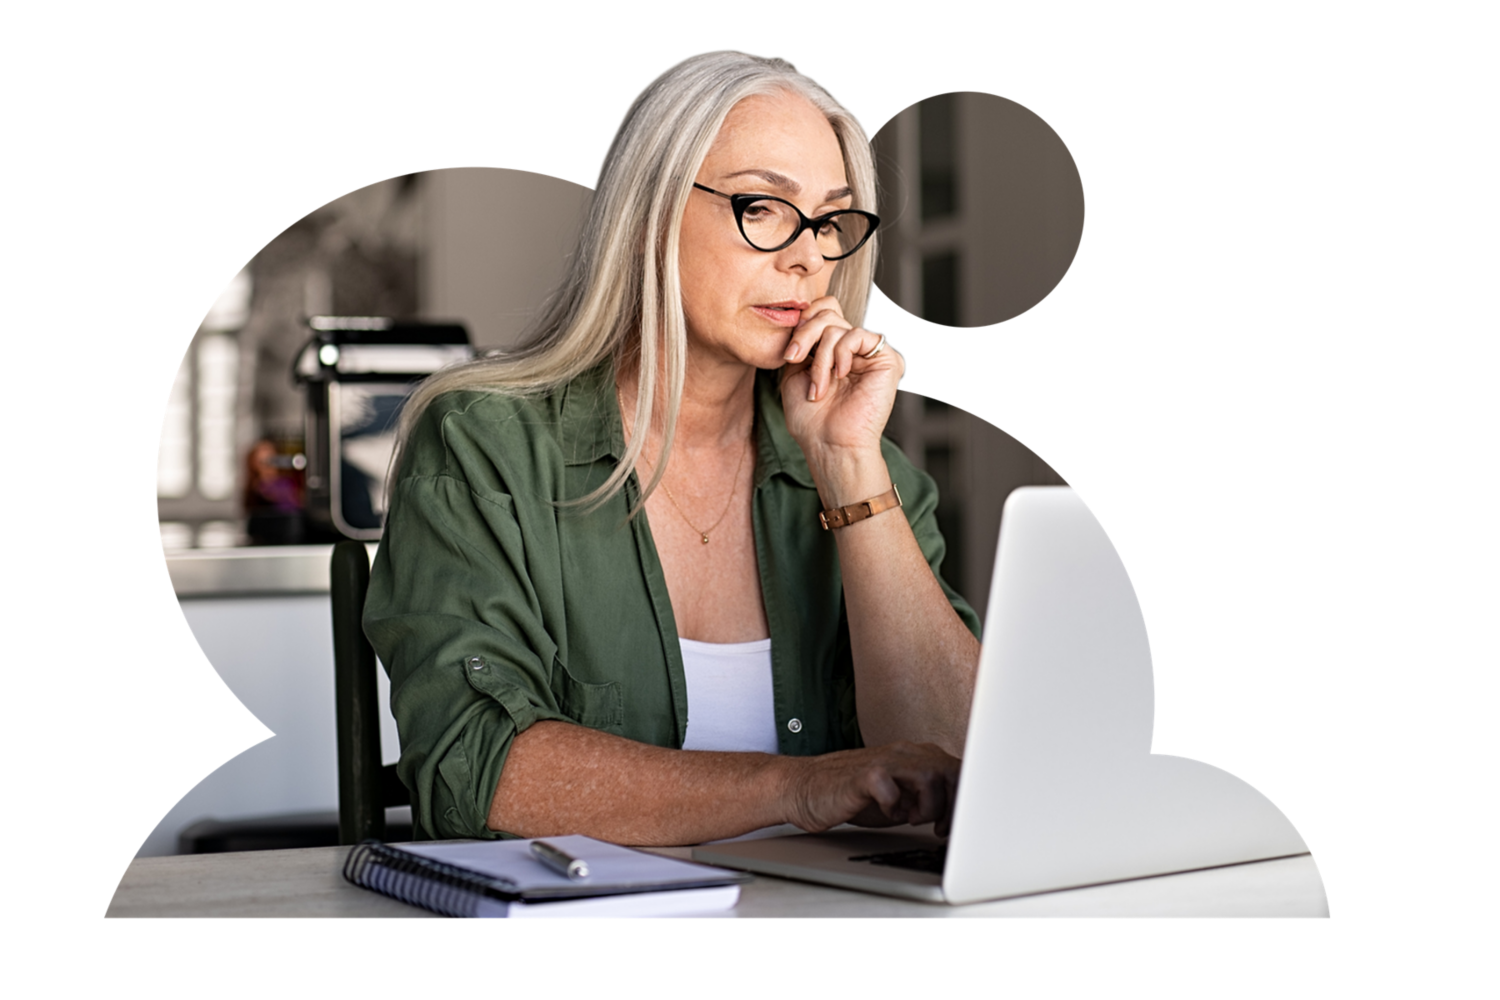 Immagine di una donna che lavora su un laptop indossando gli occhiali.